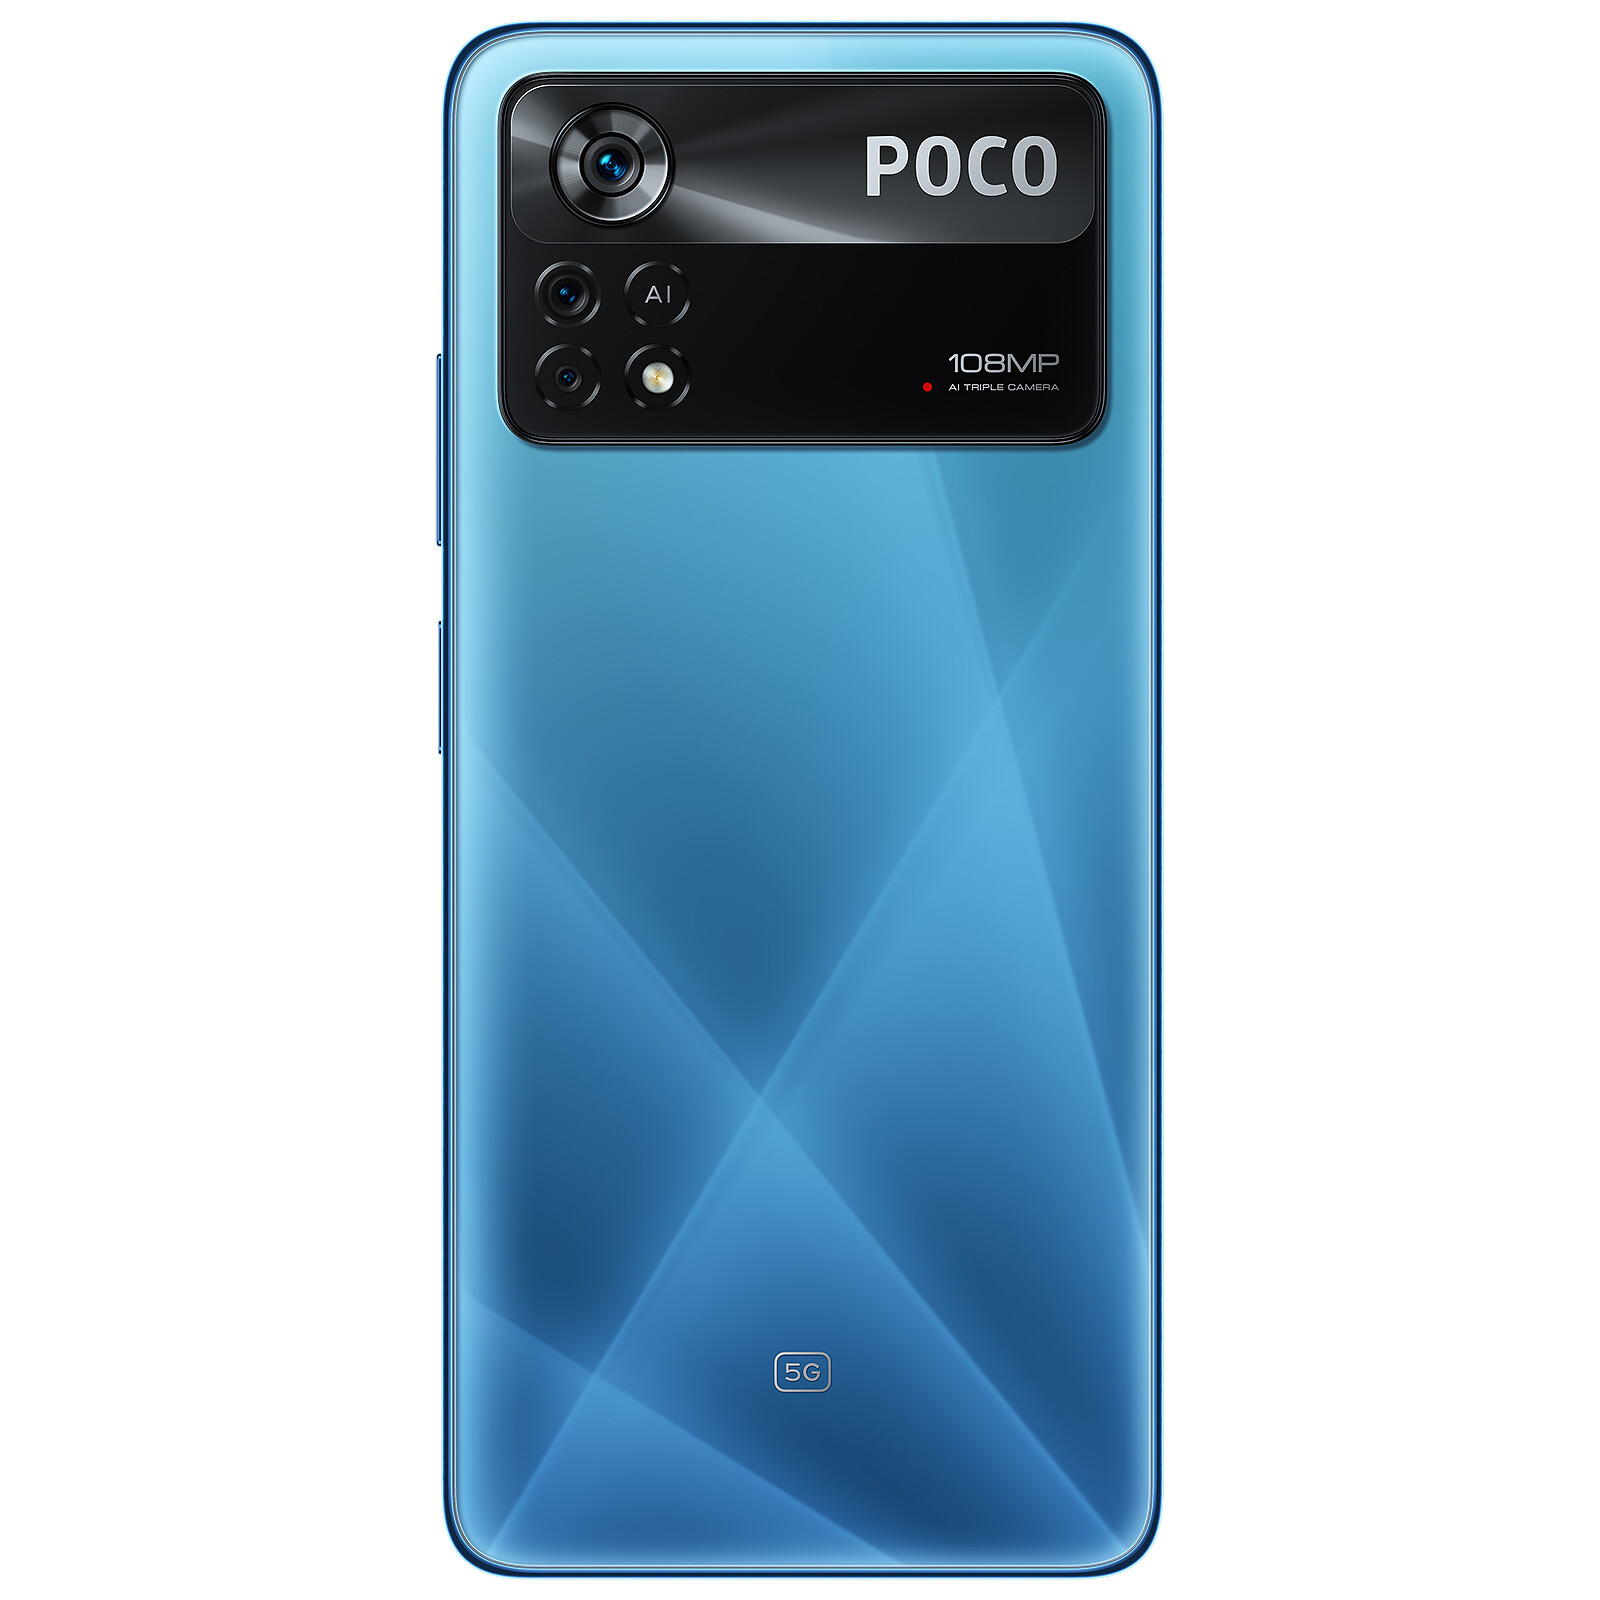 Nuevo POCO X4 Pro 5G, características, precio y ficha técnica